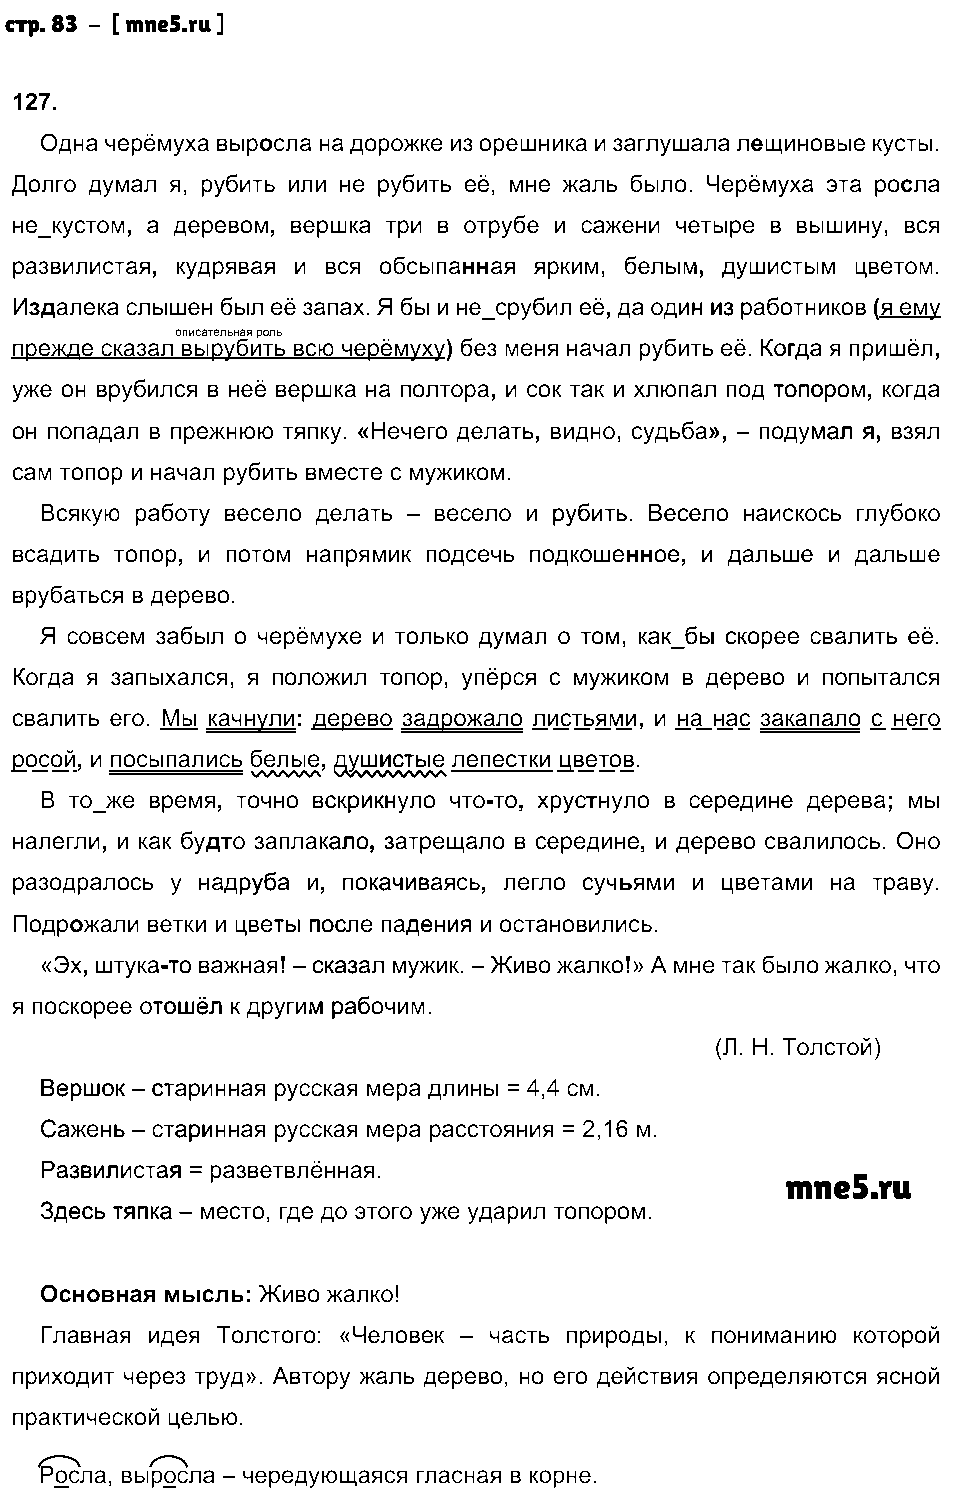 ГДЗ Русский язык 8 класс - стр. 83